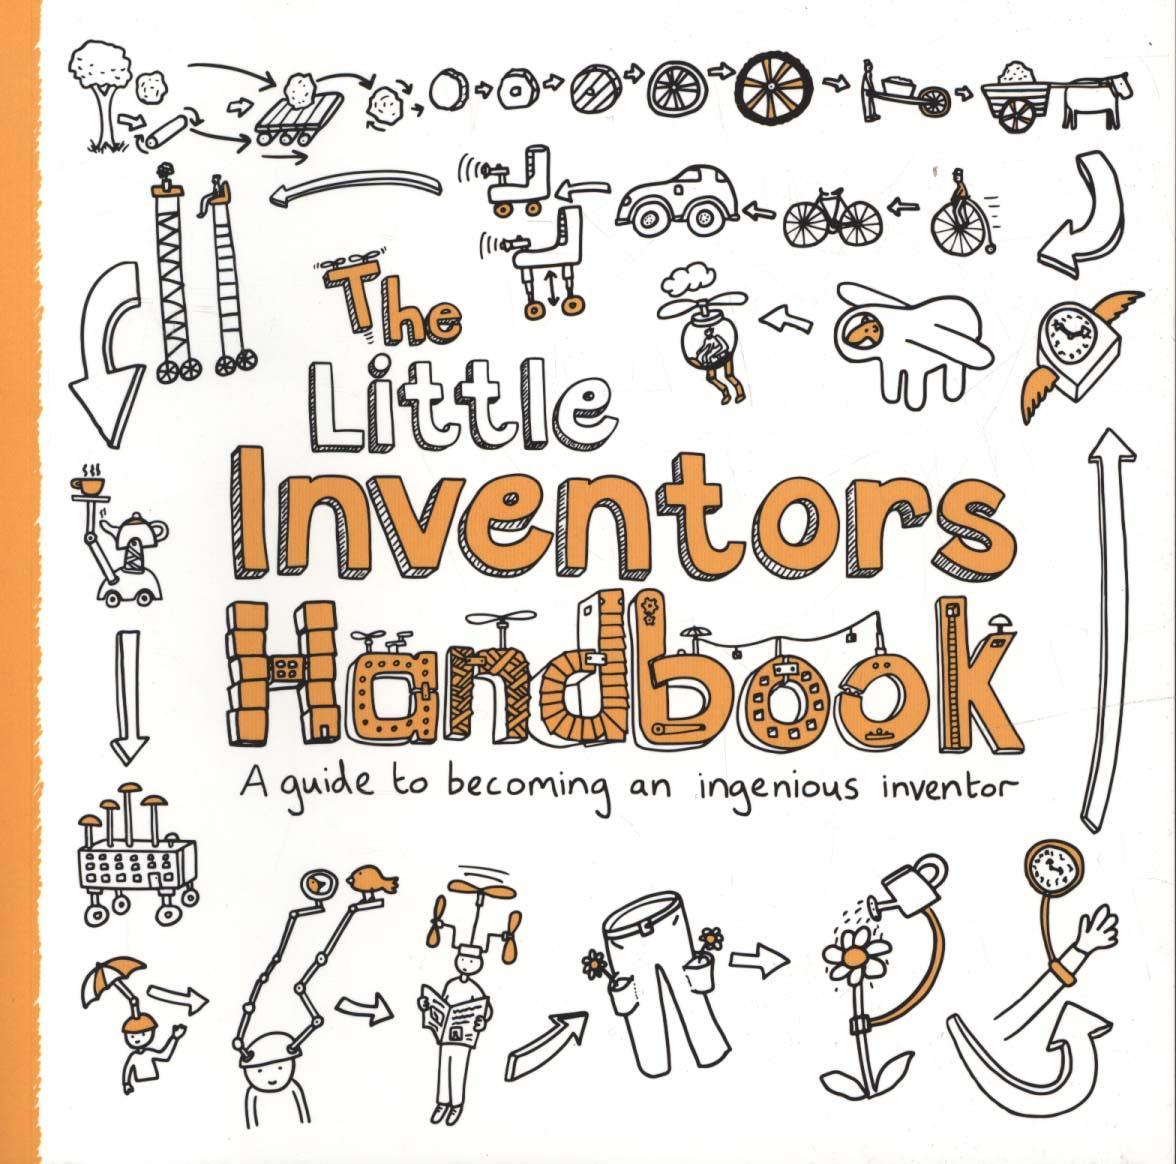 Little Inventors Handbook